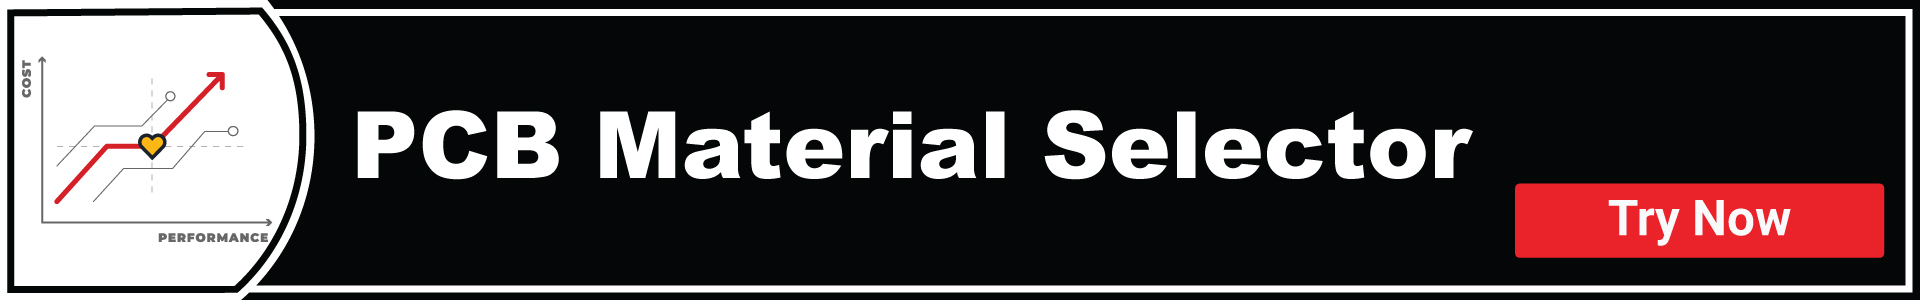 material-selector-tool-banner.jpg